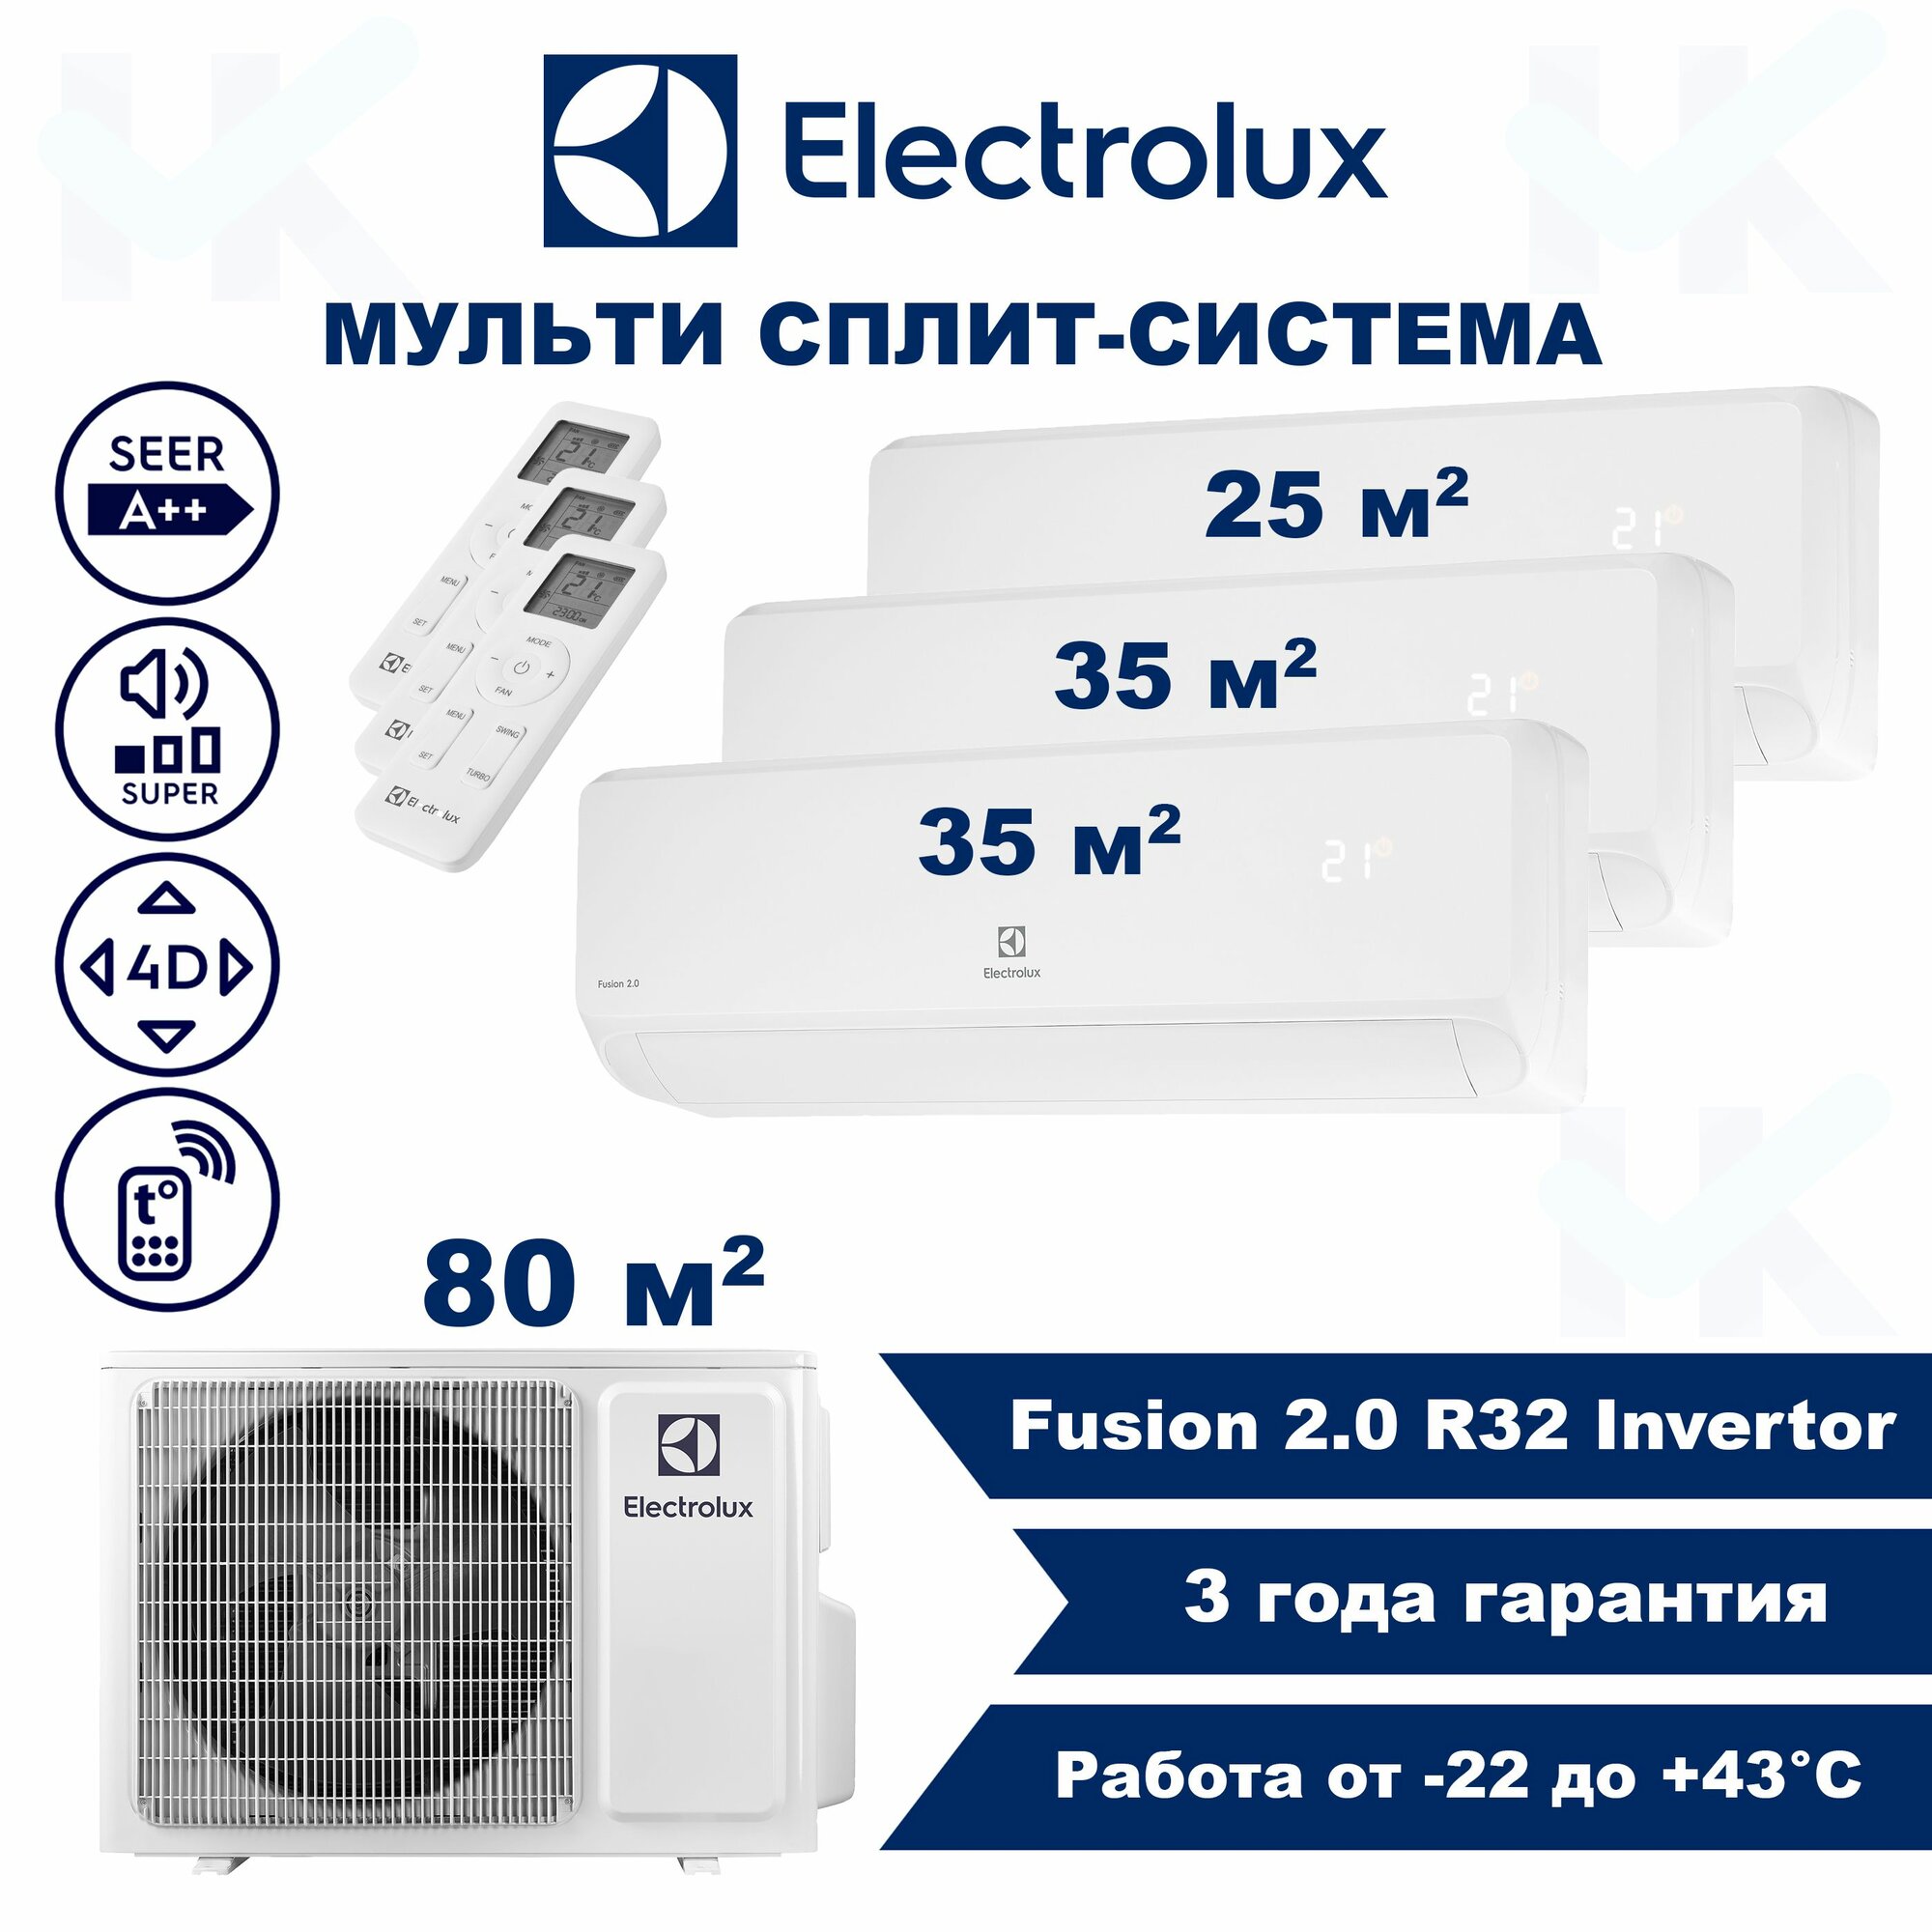 Инверторная мульти сплит-система ELECTROLUX серии Fusion 2.0 на 3 комнаты (25 м2 + 35 м2 + 35 м2) с наружным блоком 80 м2, Попеременная работа